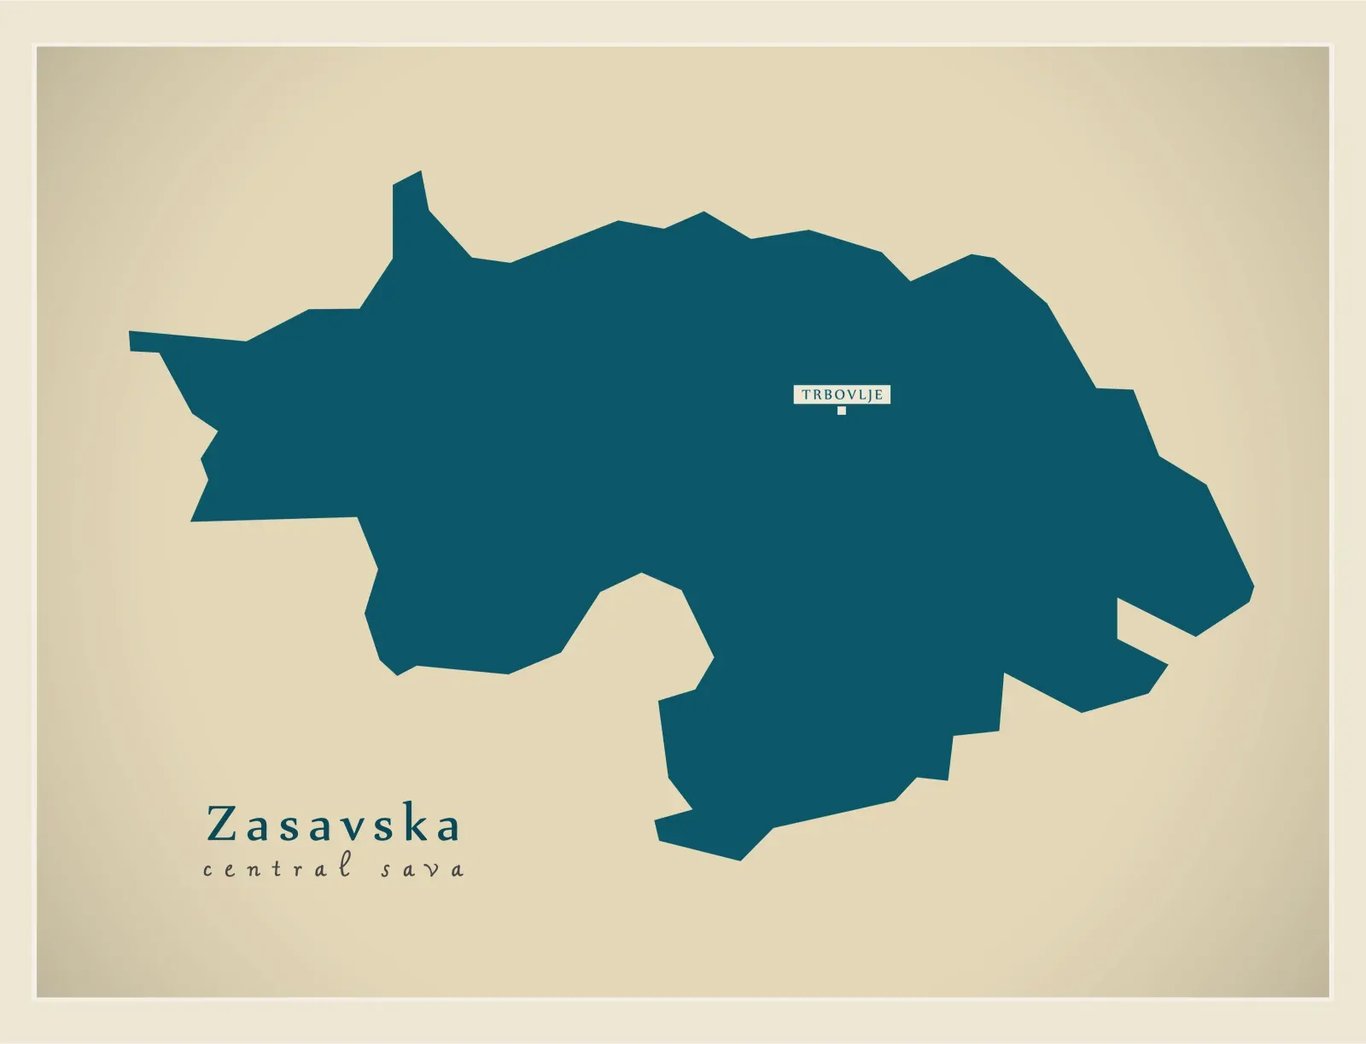 Zasavska régió, Szlovénia legkisebb régiója